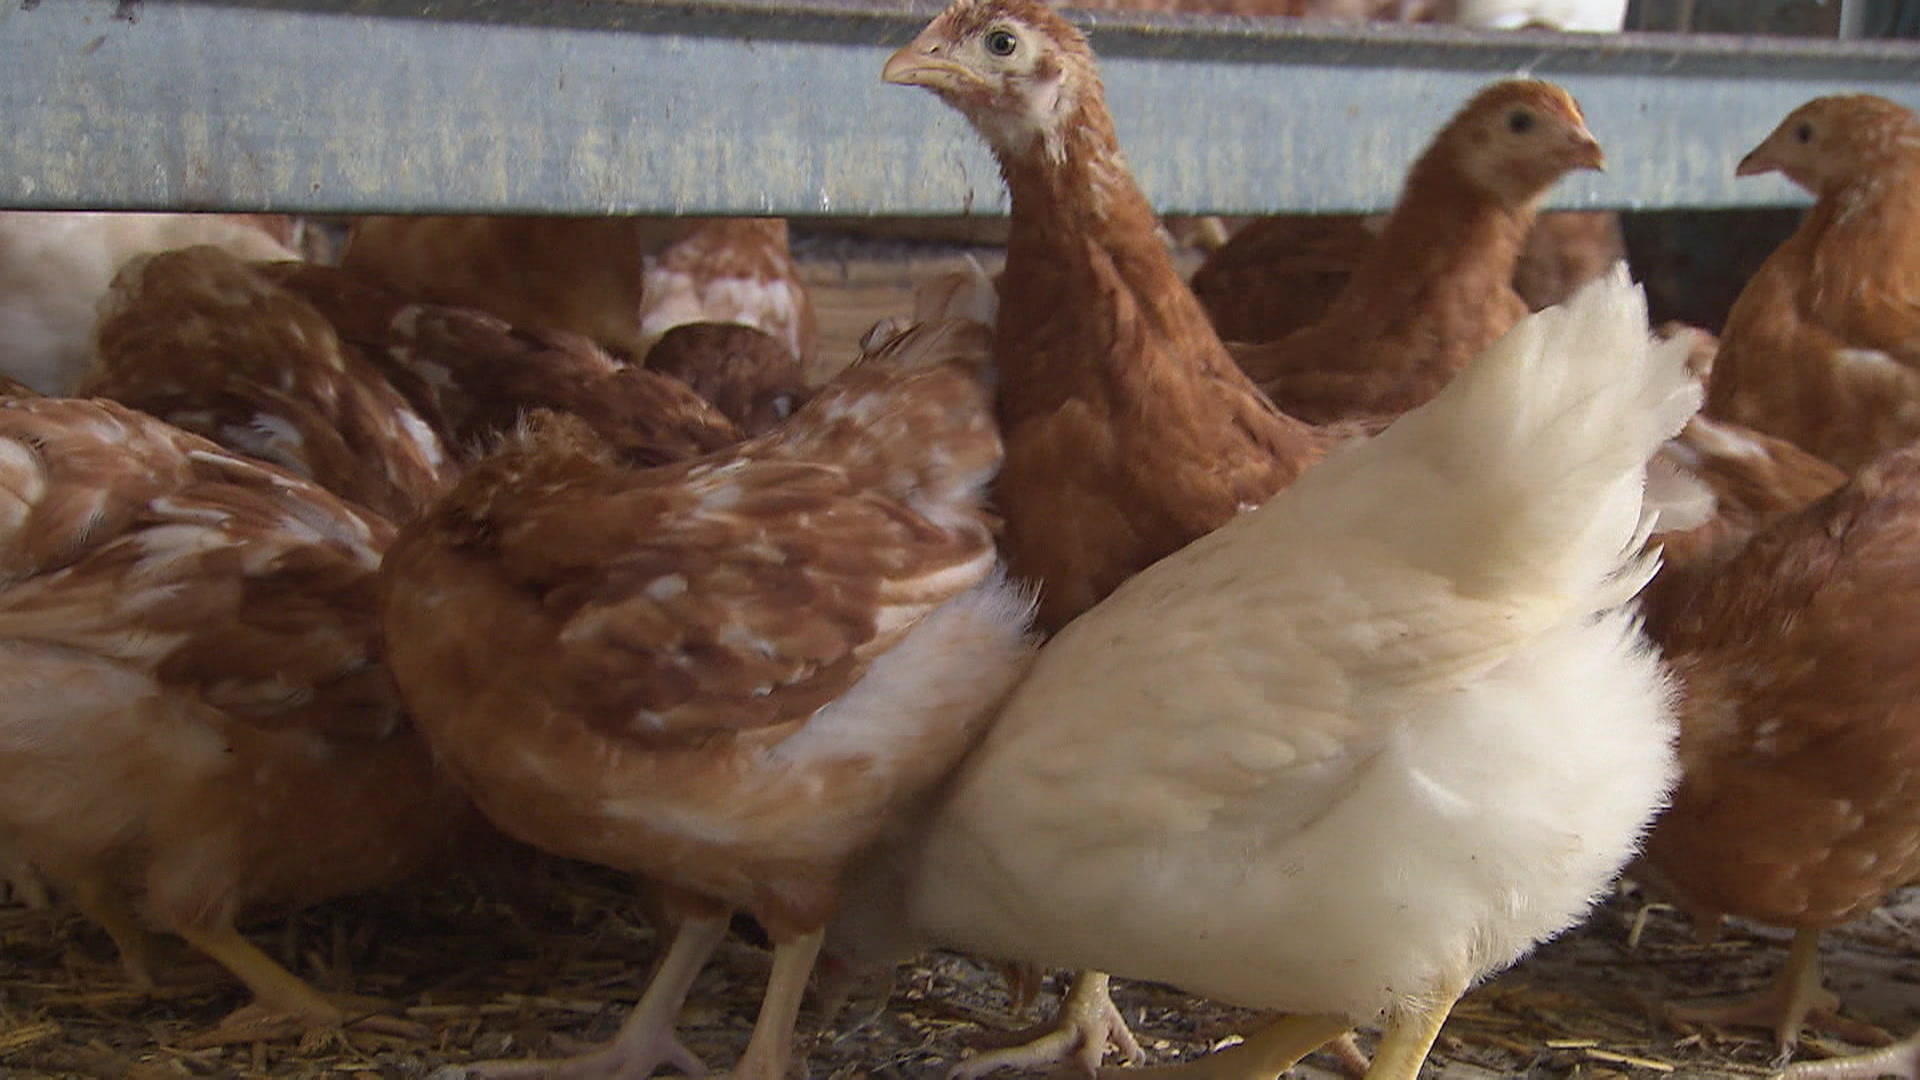 Vogelgrippe entwickelt sich zur "Tier-Pandemie" WHO zeigt sich besorgt